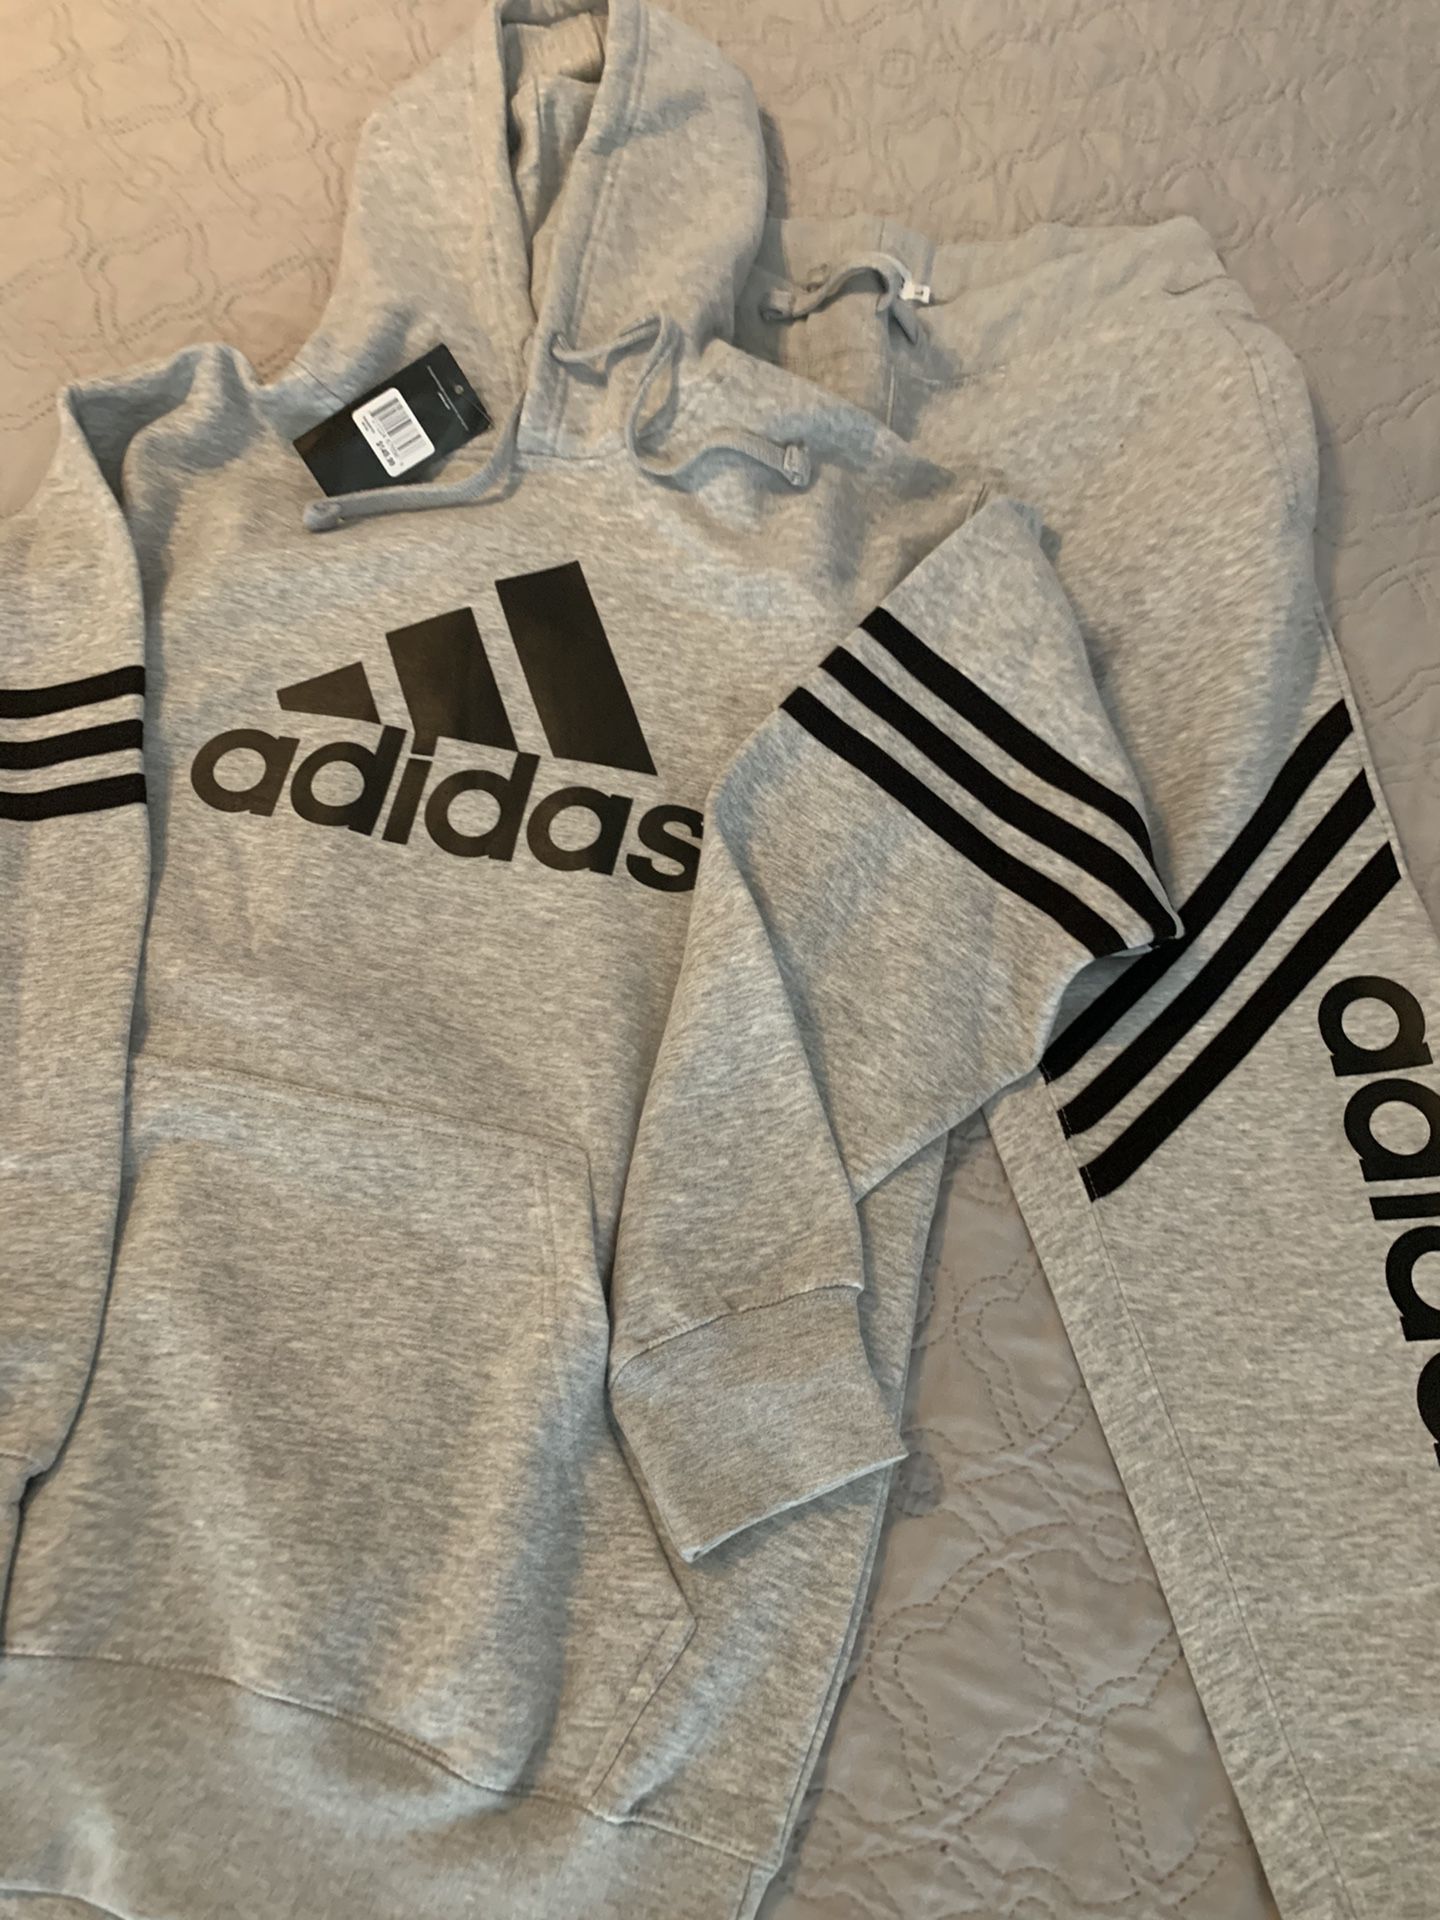 Men’s Adidas Sweatshirt/Jogger Set - Size Large